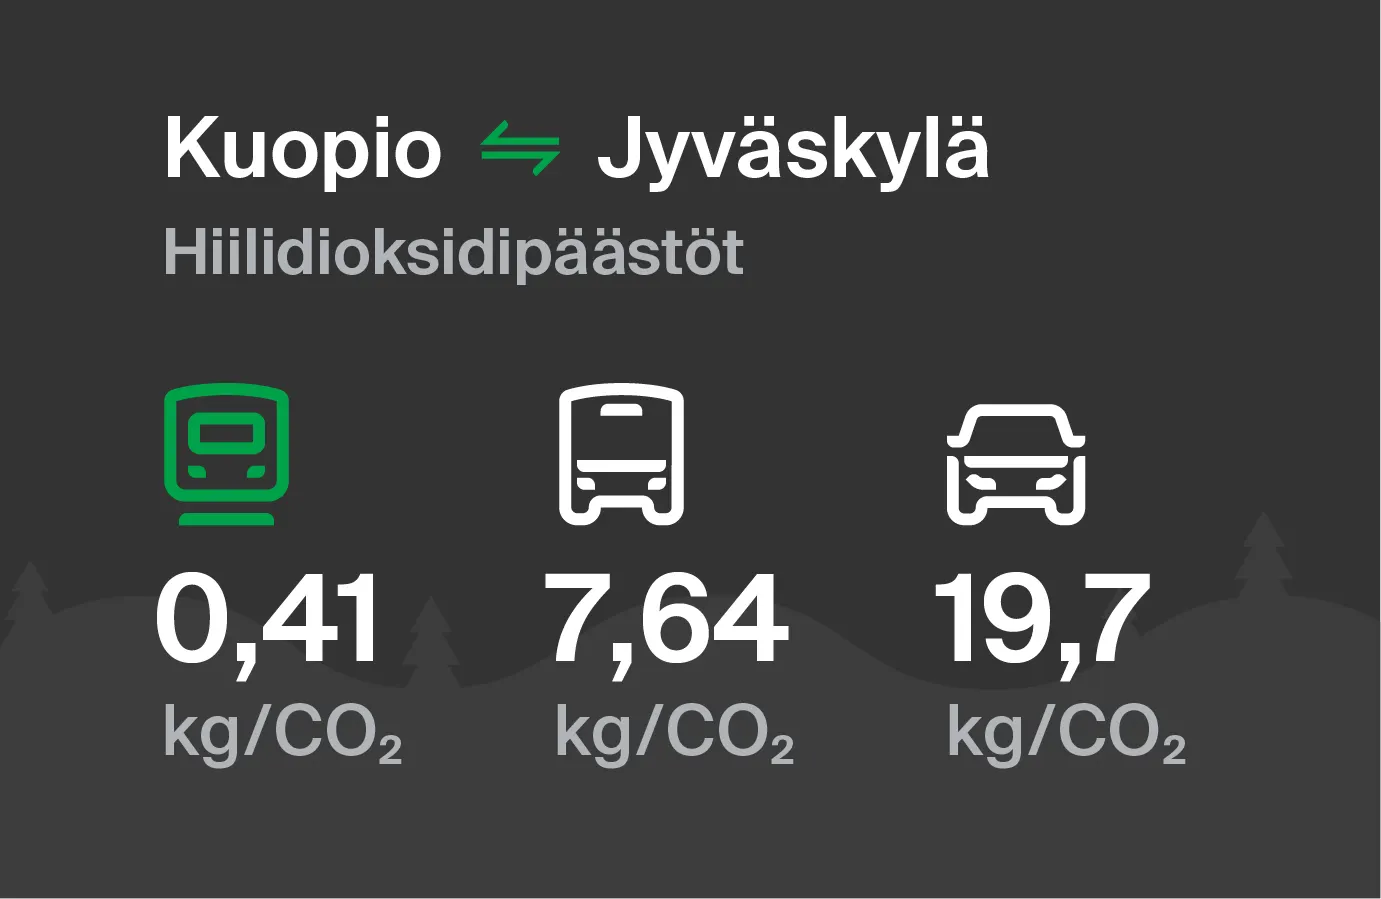 Hiilidioksidipäästöt Kuopiosta Jyväskylään eri kulkuvälinemuodoilla: junalla 0,41 kg/CO2, bussilla 7,64 kg/CO2 ja autolla 19,7 kg/CO2.